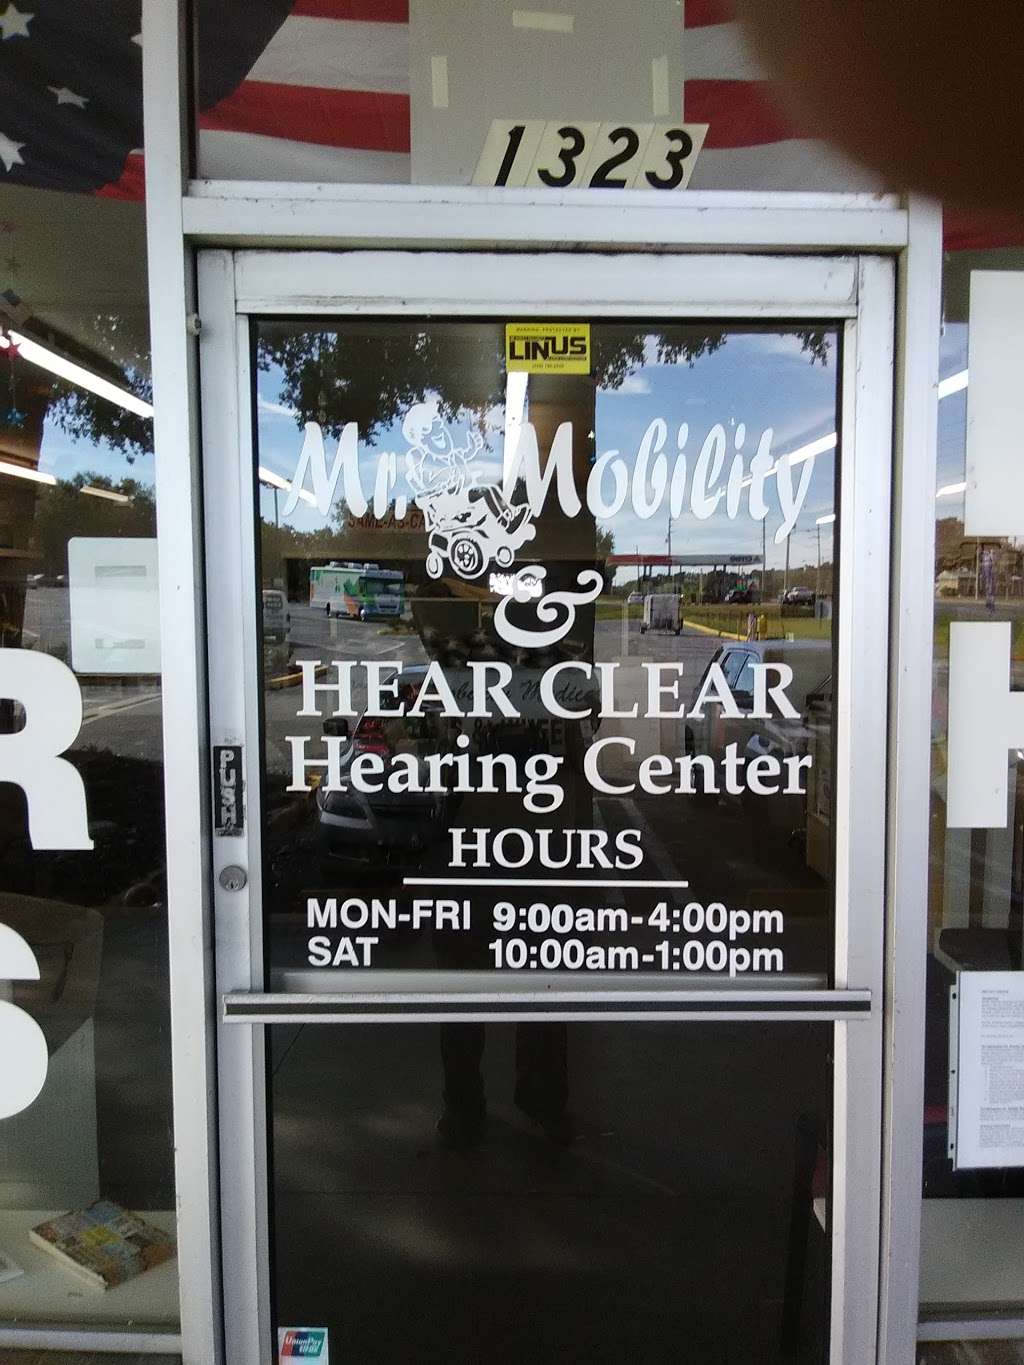 Hear Clear Hearing Center | 1323 S 14th St, Leesburg, FL 34748 | Phone: (352) 323-8585